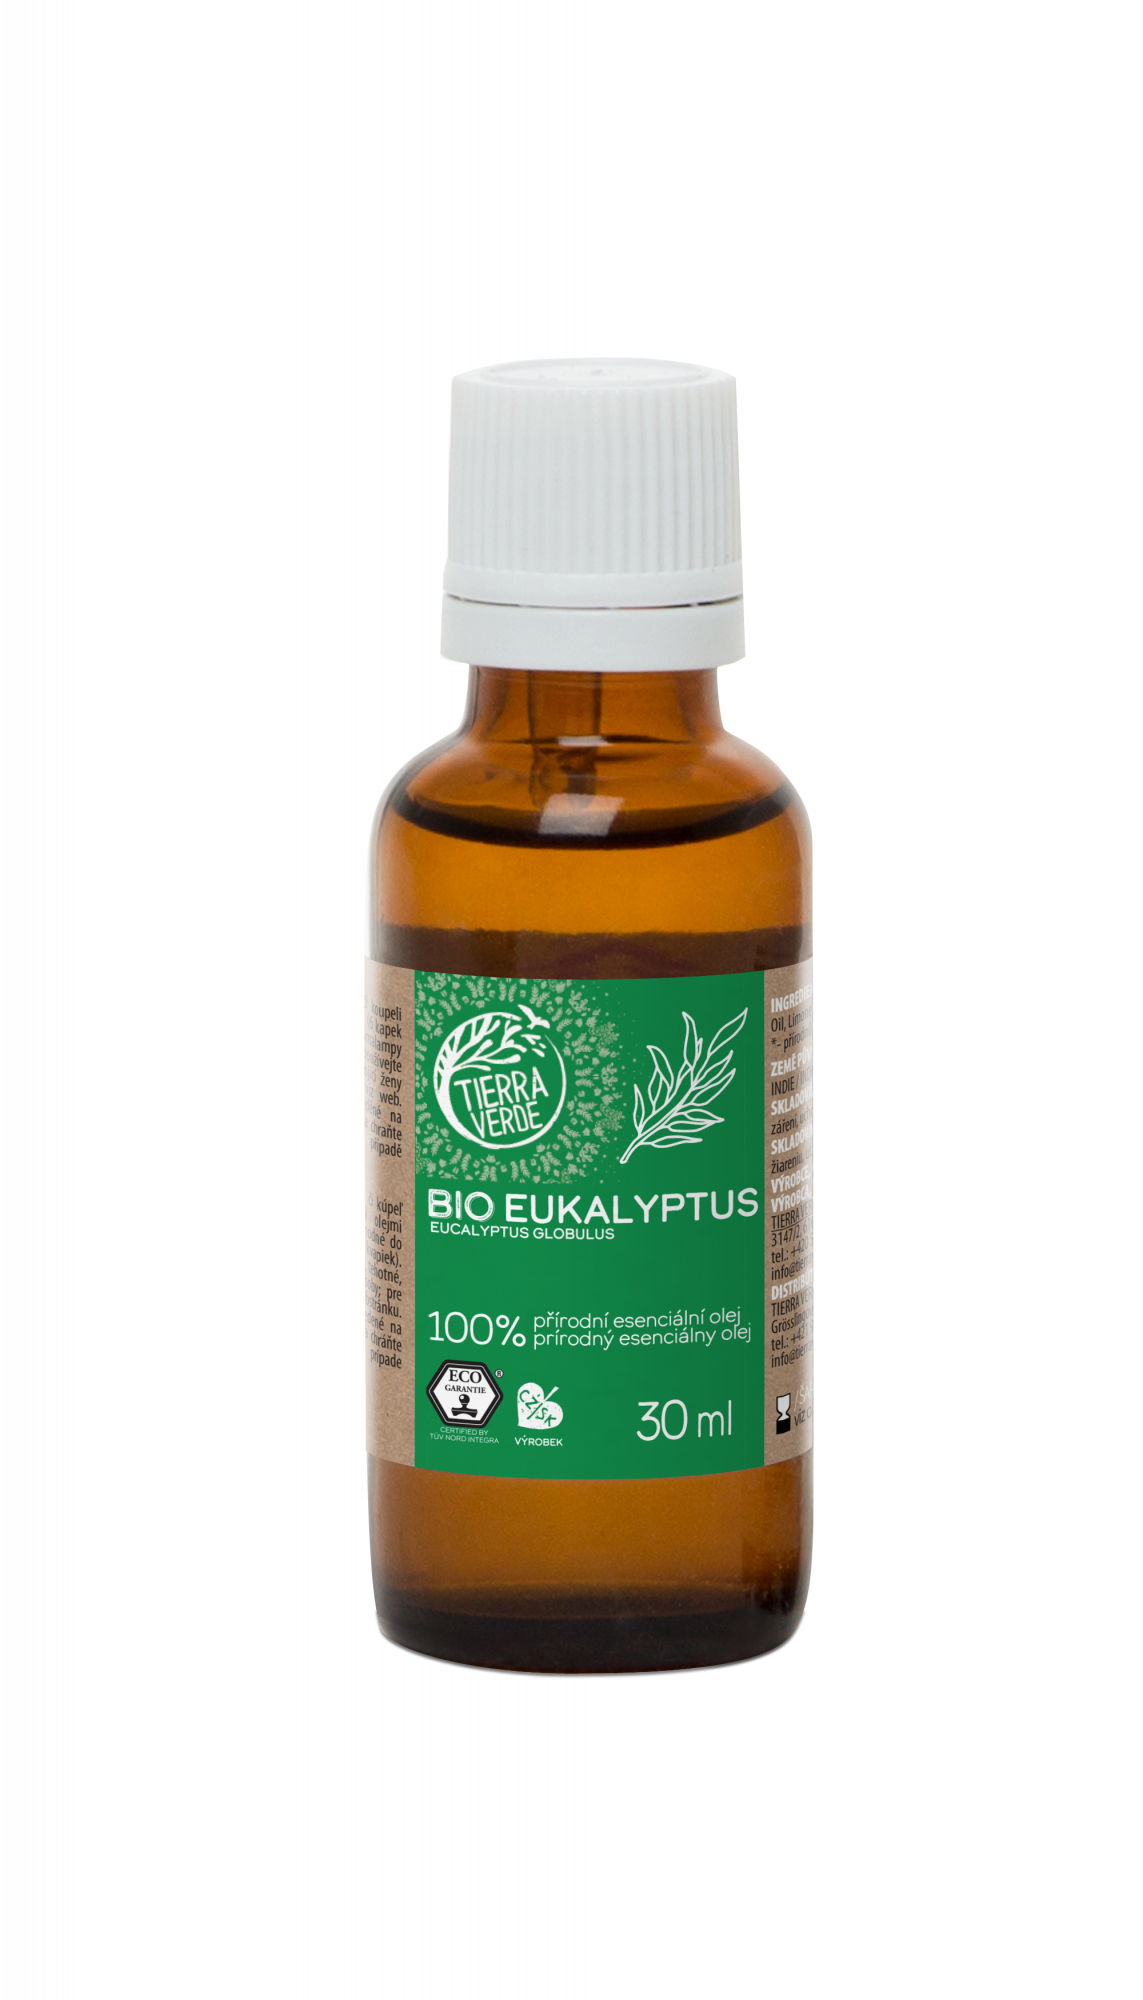 Tierra Verde Esenciální olej Eukalyptus BIO 30 ml - uleví při nachlazení Tierra Verde